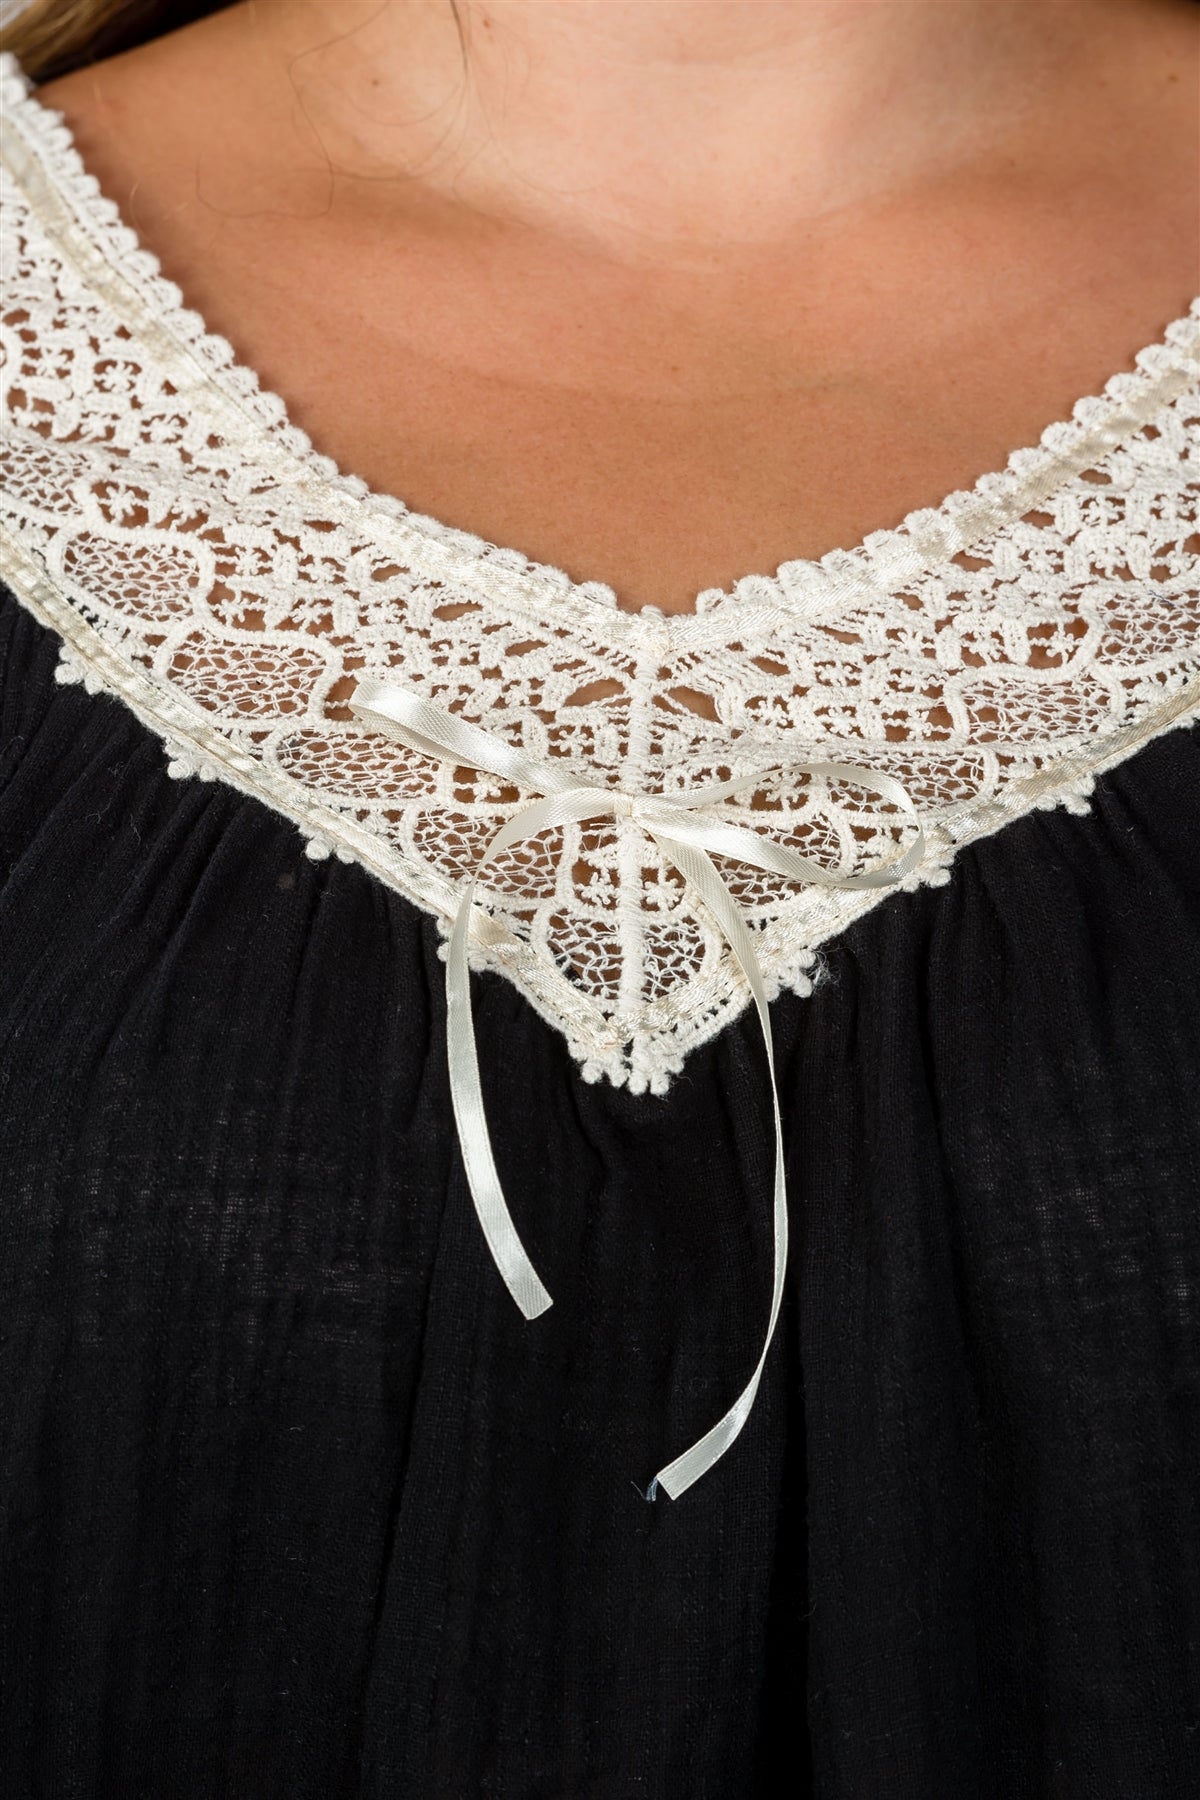 Ladies fashion plus size beige floral lace crochet tunic top